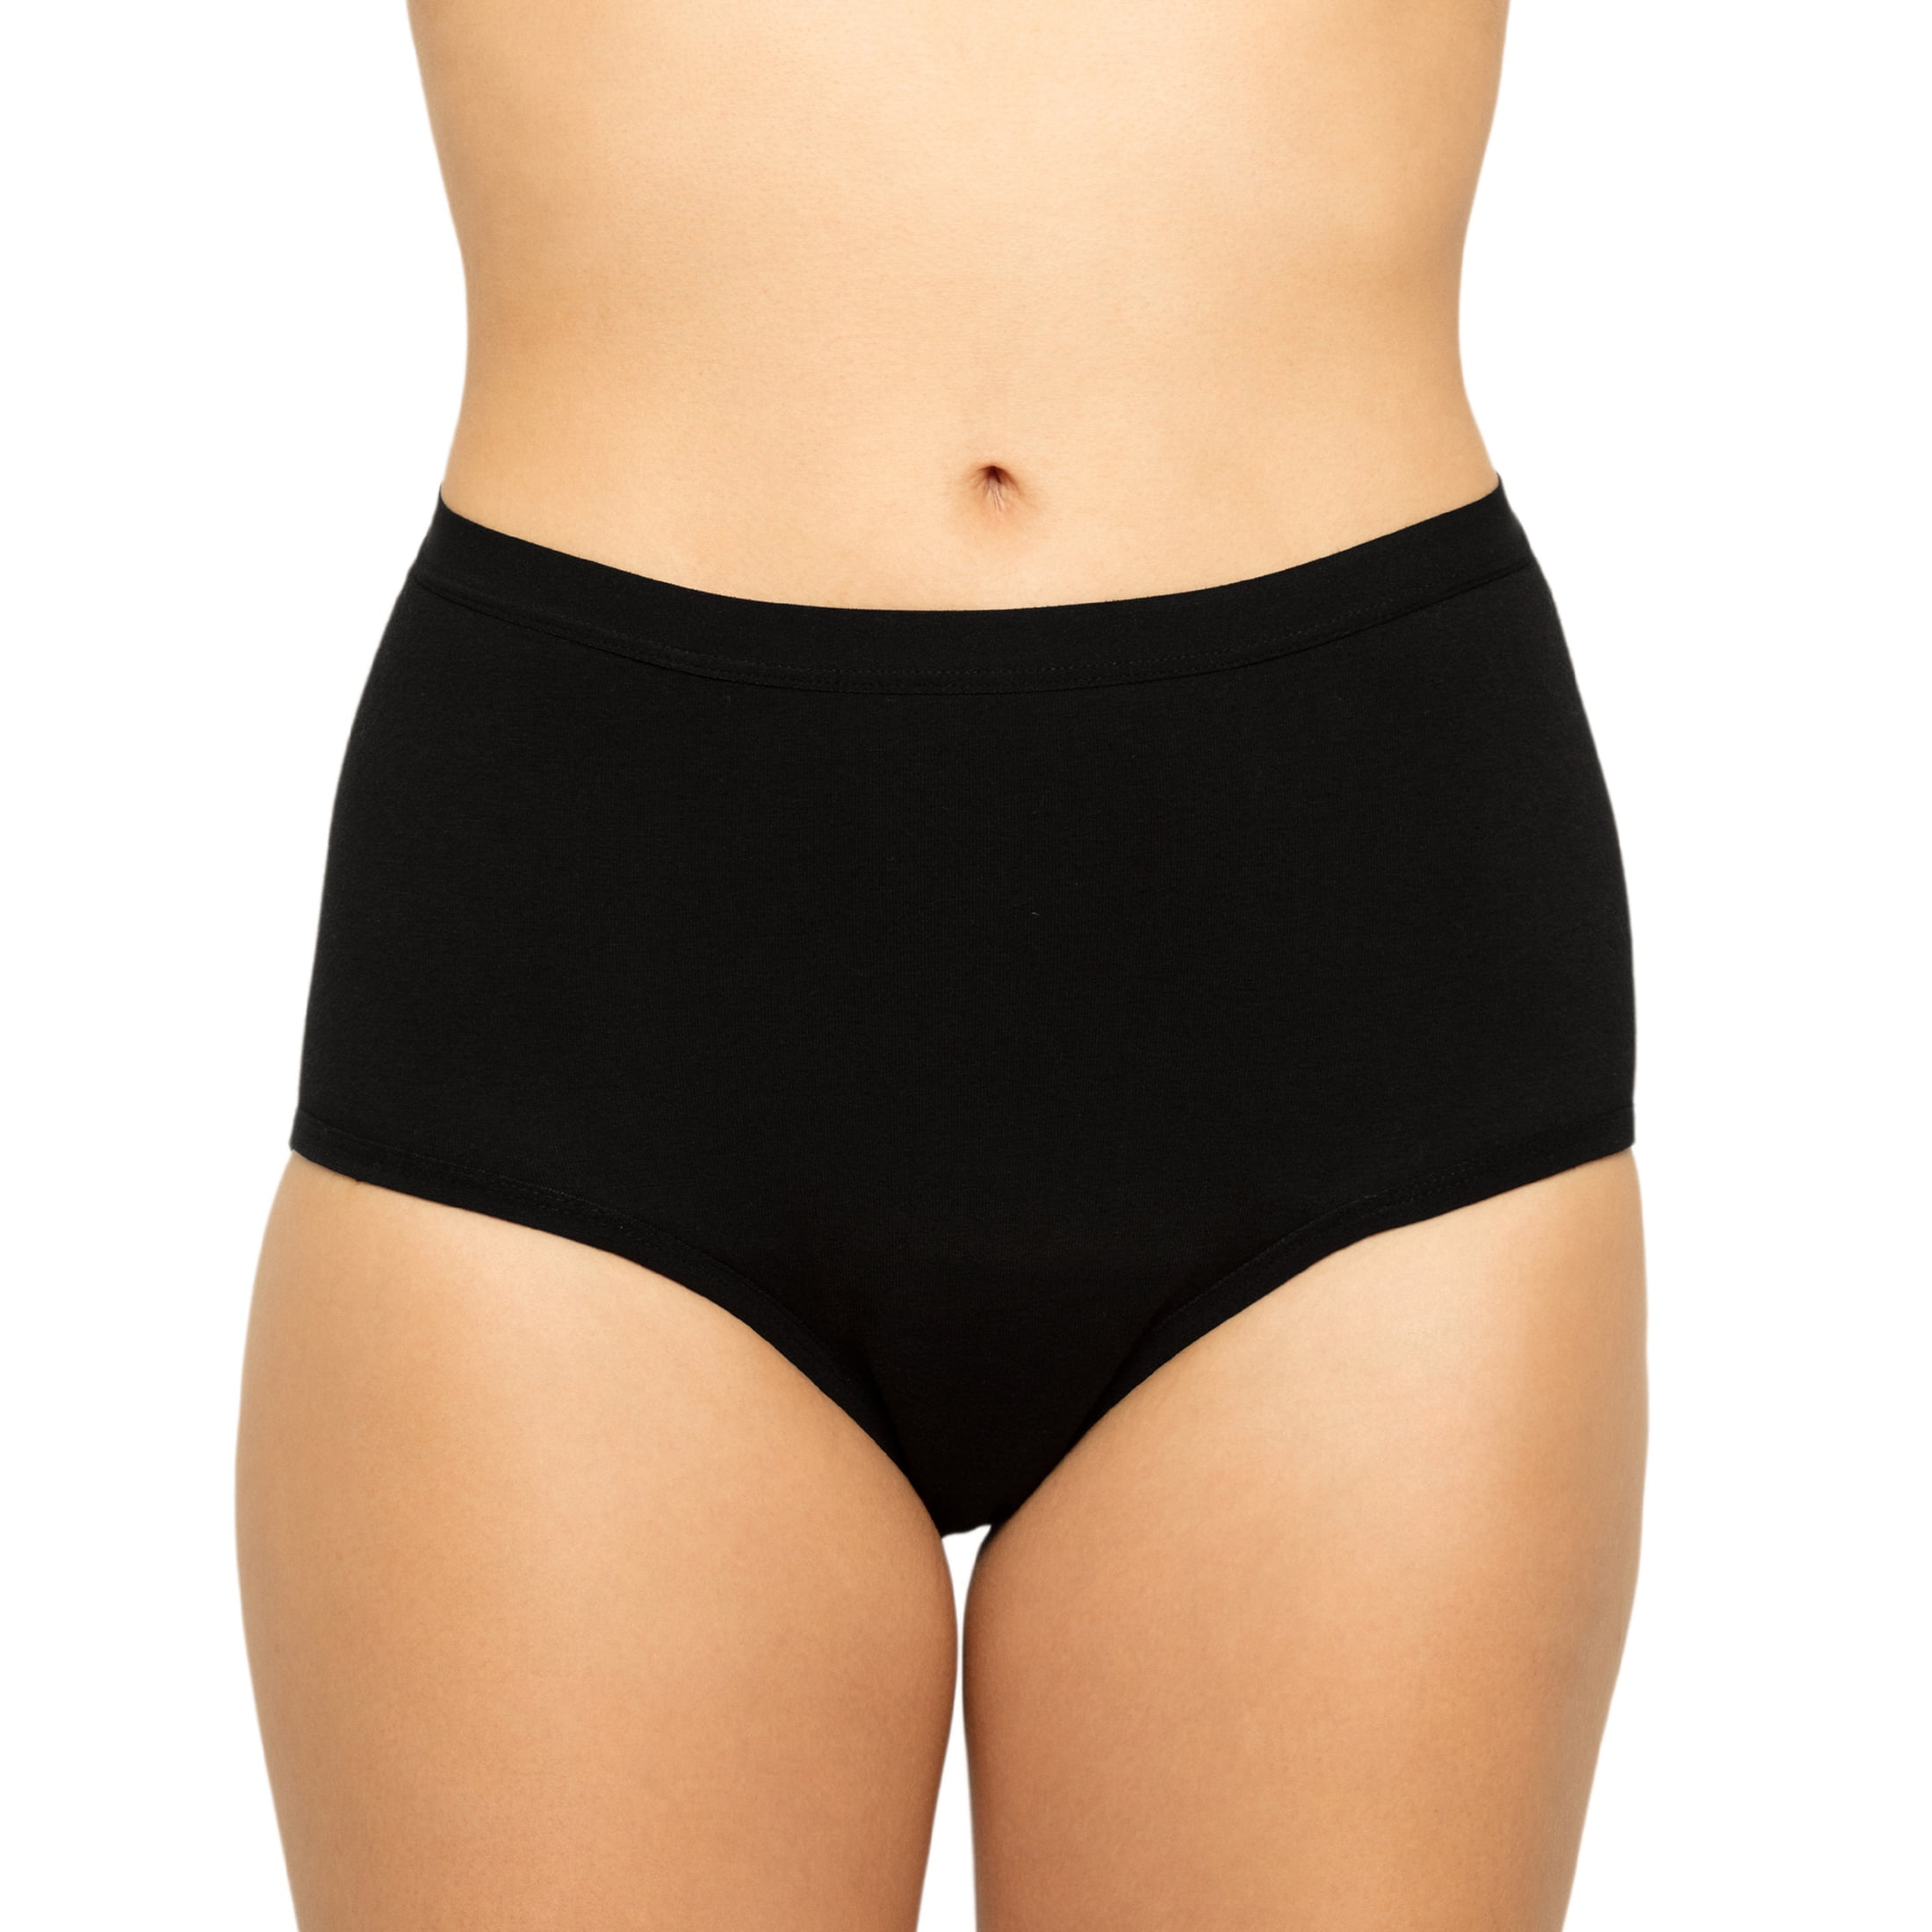 Buy PULIOU Period Underwear for Women Menstrual Panties Teens High